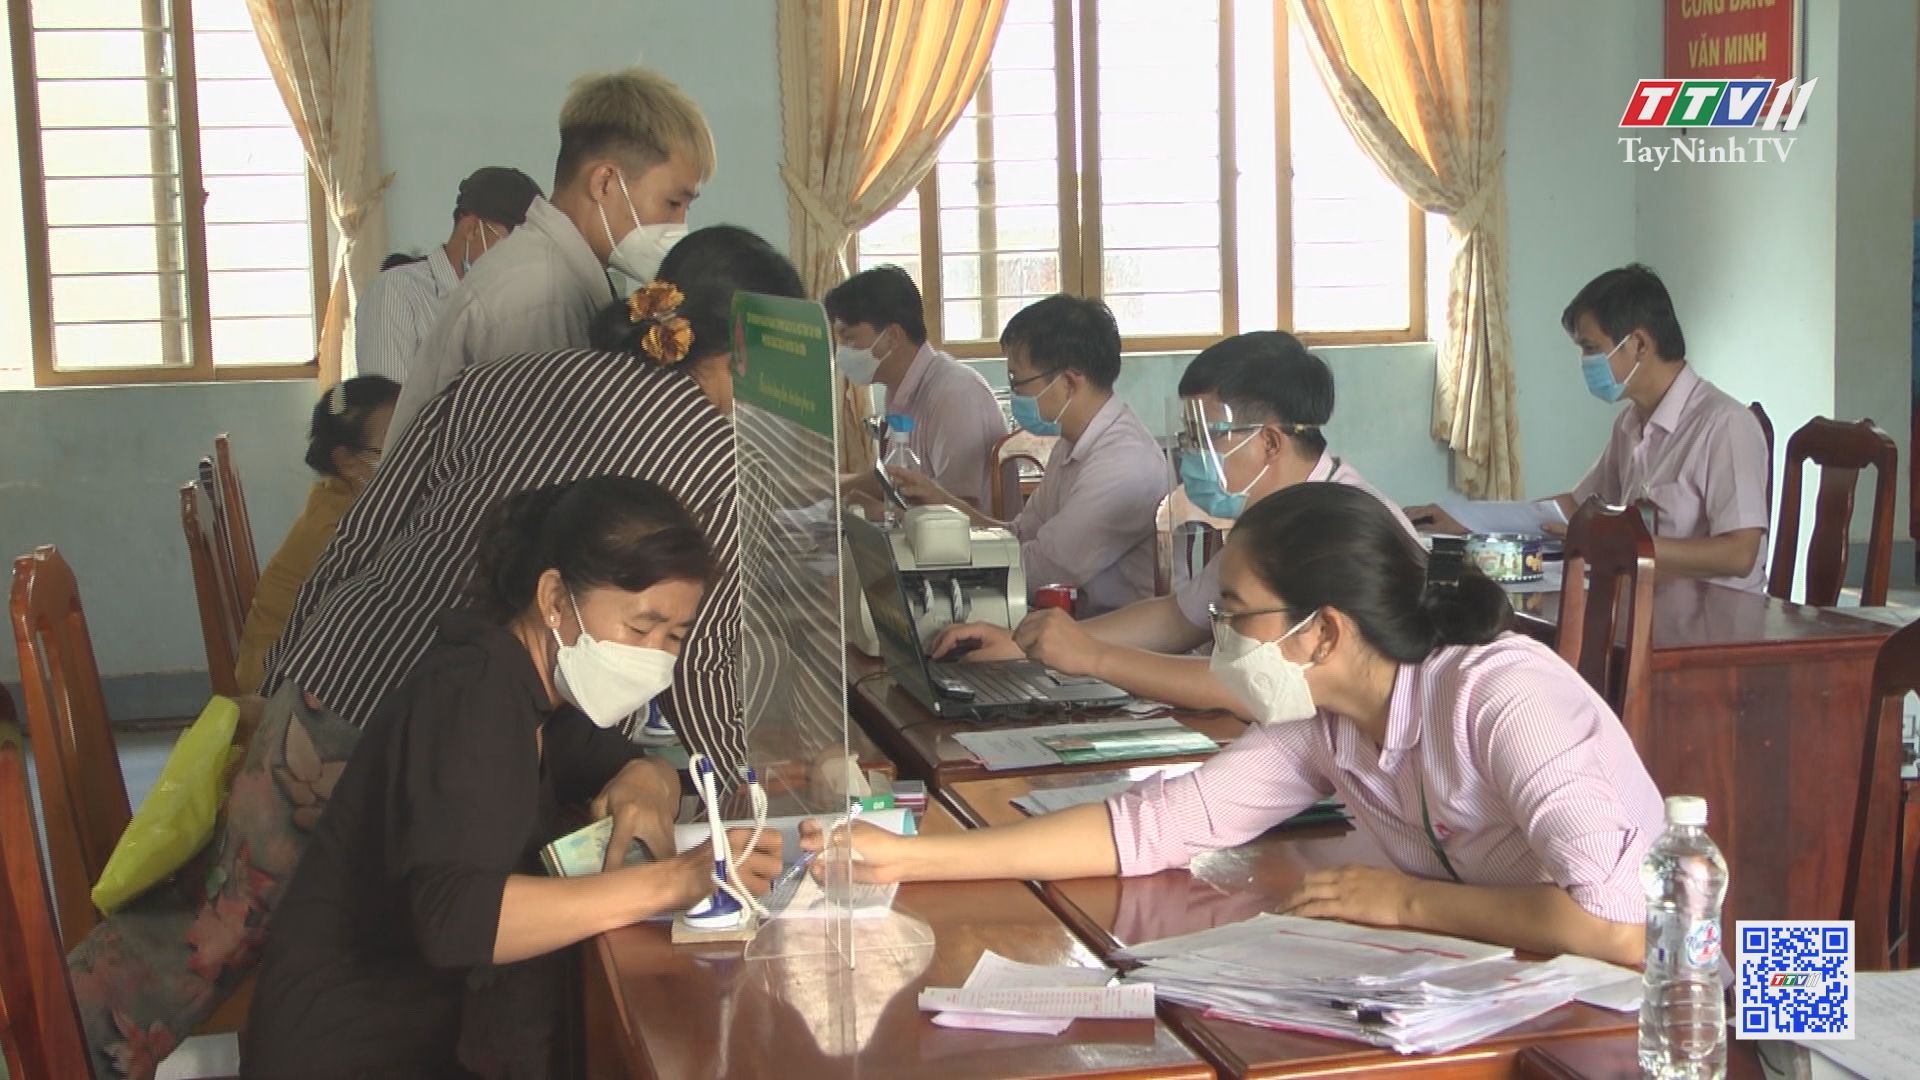 Hiệu quả từ vốn vay hỗ trợ việc làm | Nông nghiệp Tây Ninh | TayNinhTV